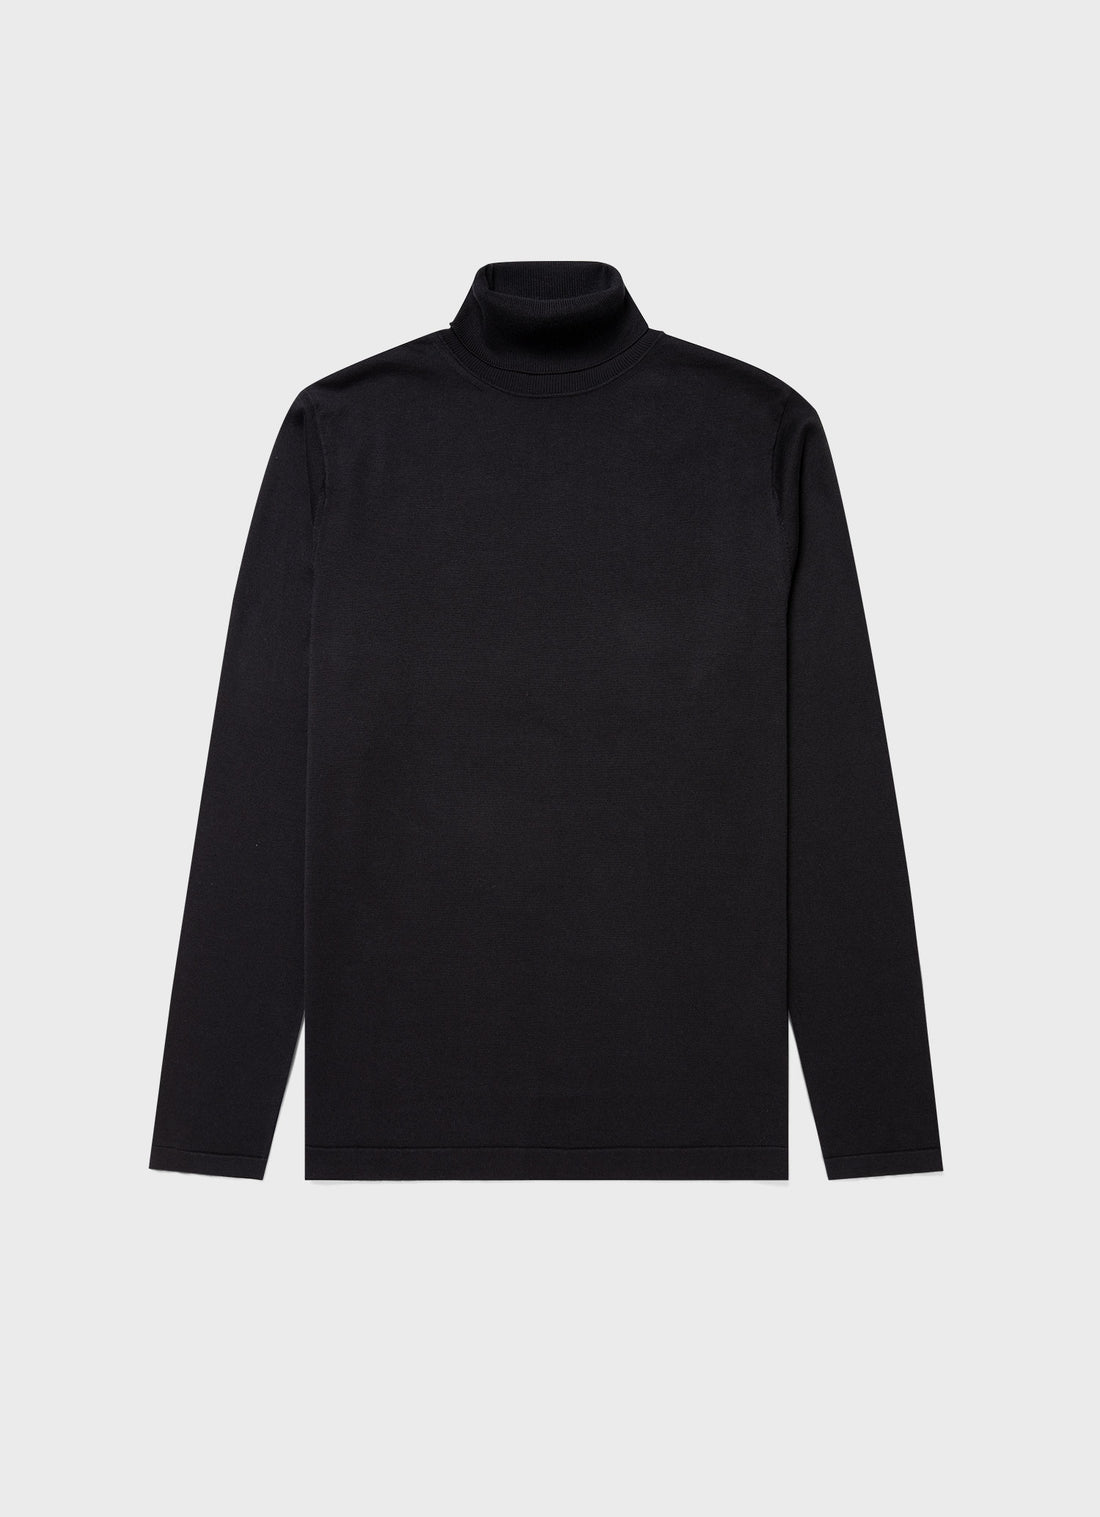 Men's Sea Island Cotton Roll Neck Sweater in Black